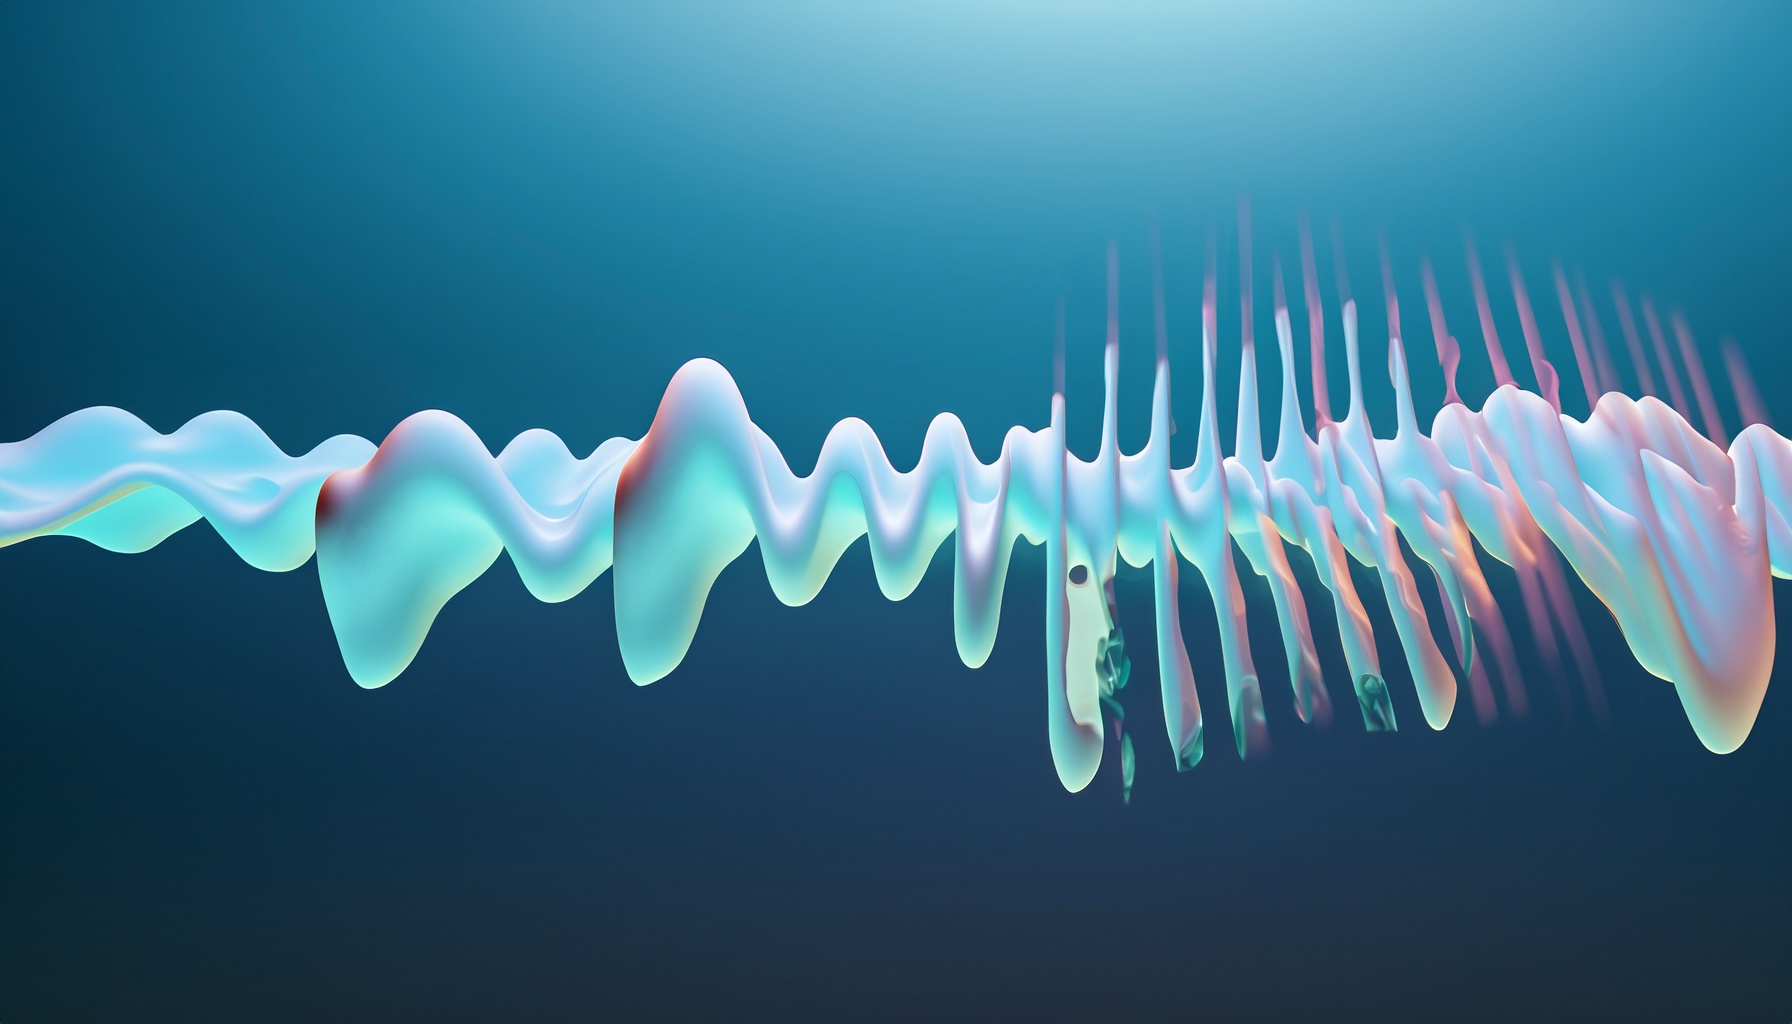 Sound can travel through water 4.3 times faster than through air